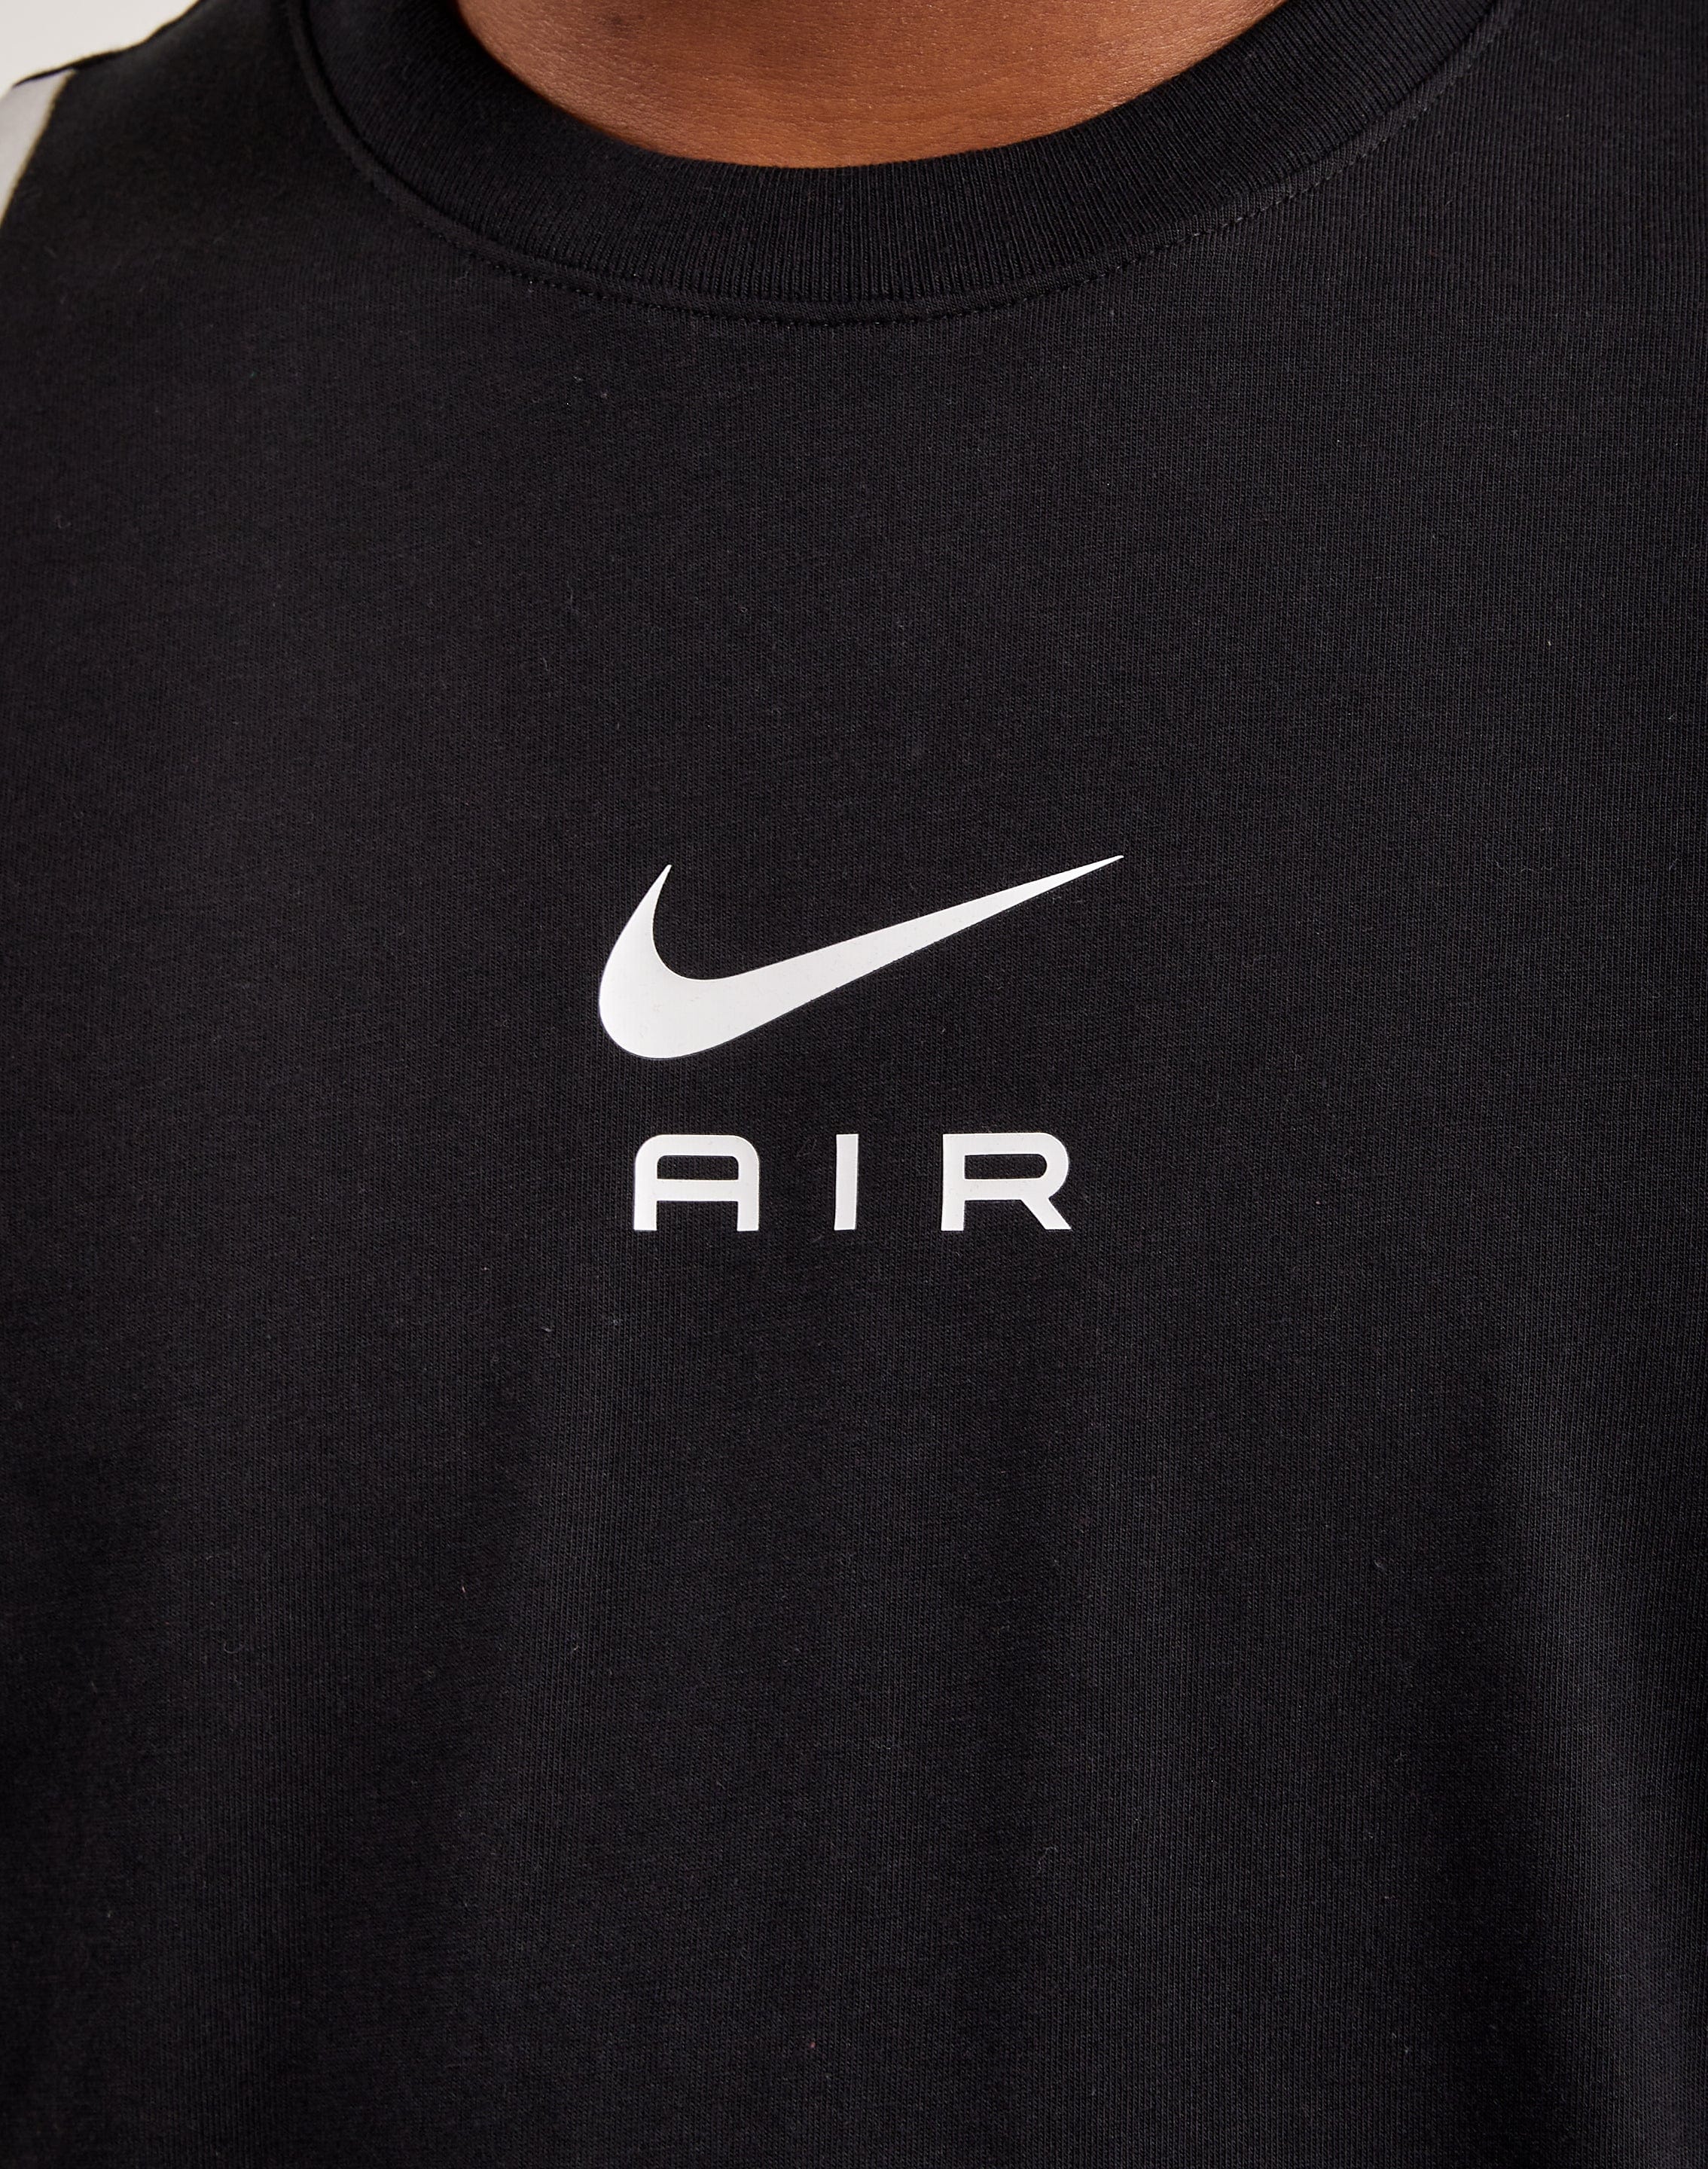 Nike Air Tee – DTLR